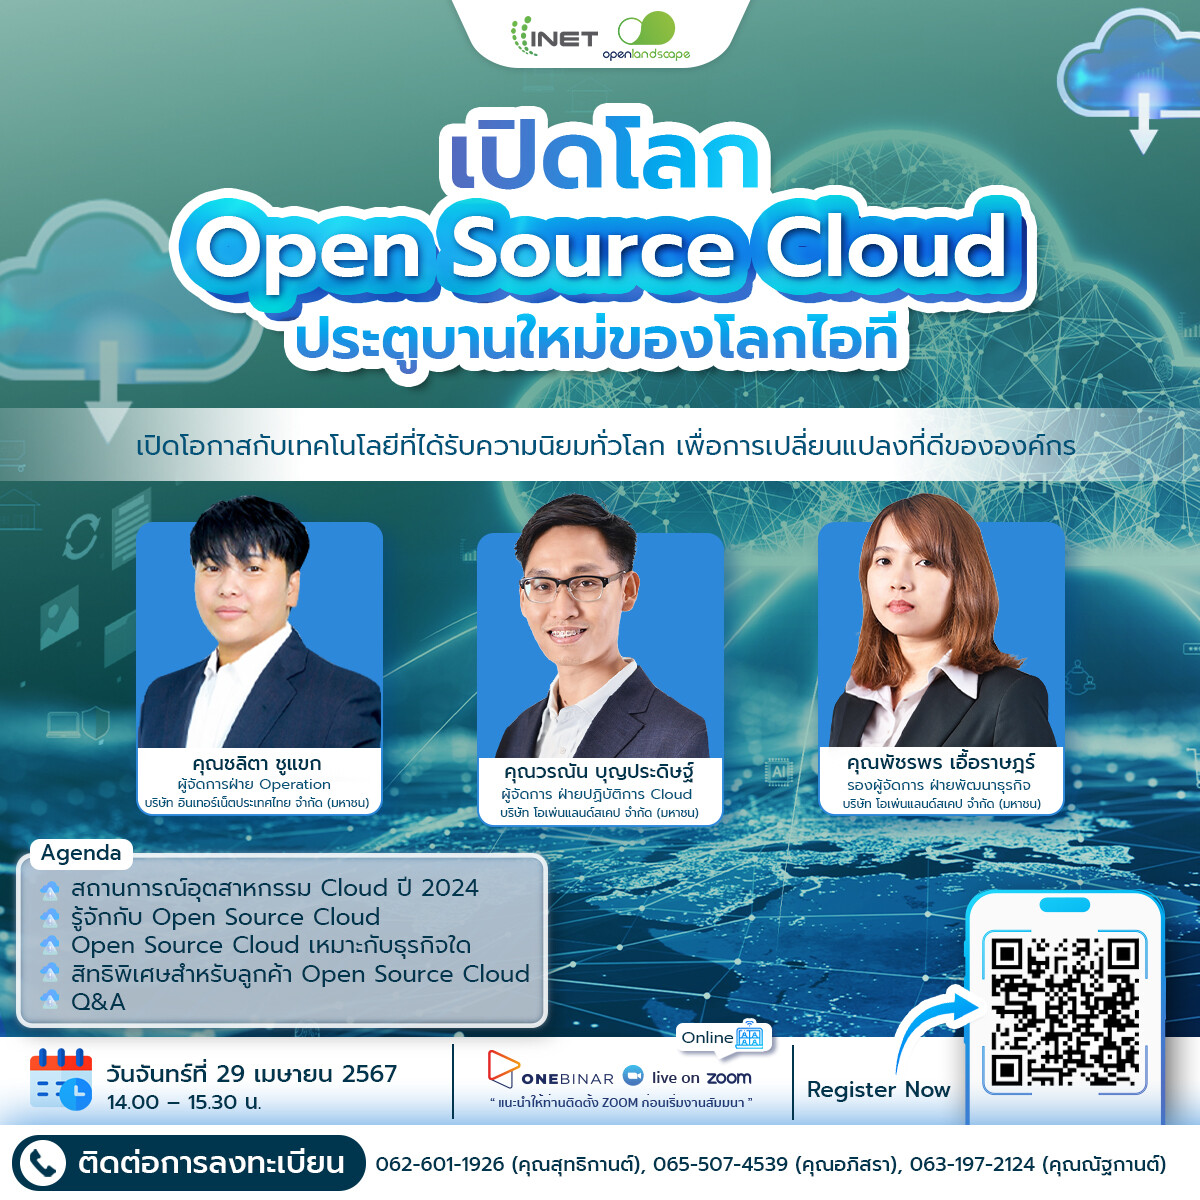 งานสัมมนาออนไลน์ "เปิดโลก Open Source Cloud ประตูบานใหม่ของโลกไอที"